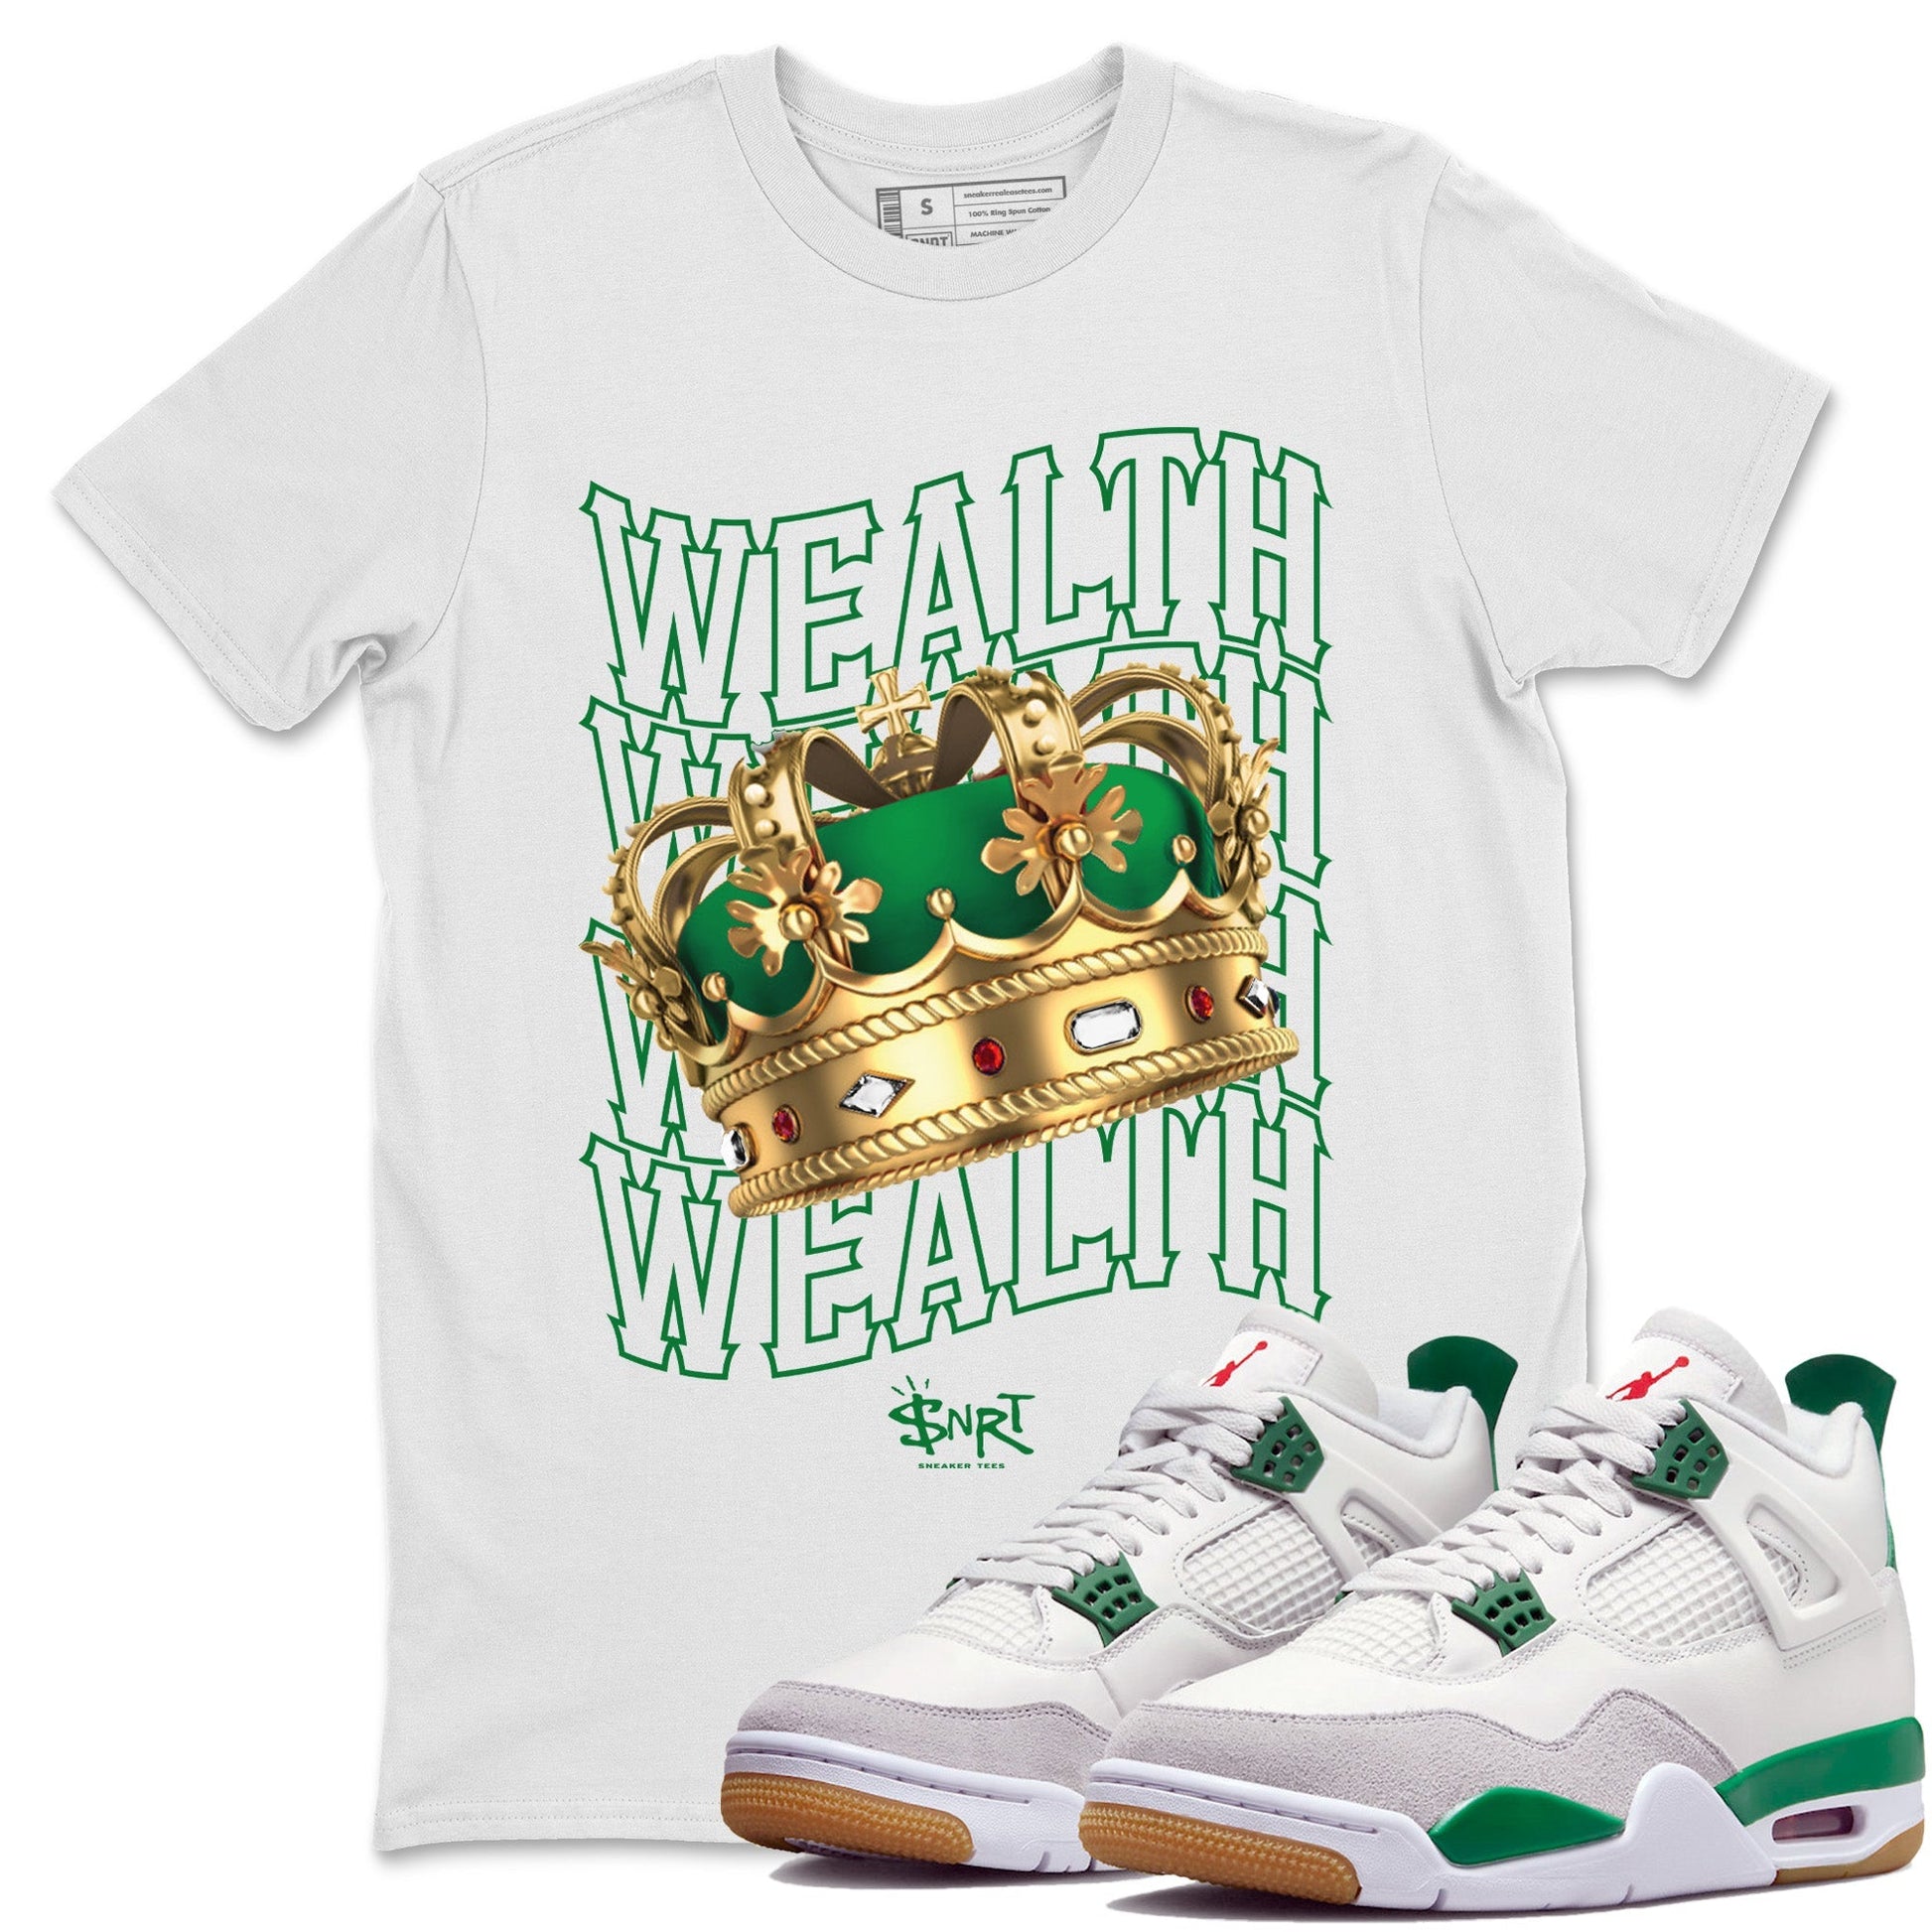 Air Jordan 4 Pine Green Sneaker Tees Drip Gear Zone Wealth Sneaker Tees Jordan Retro 4 Pine Green Shirt Unisex Shirts White 1